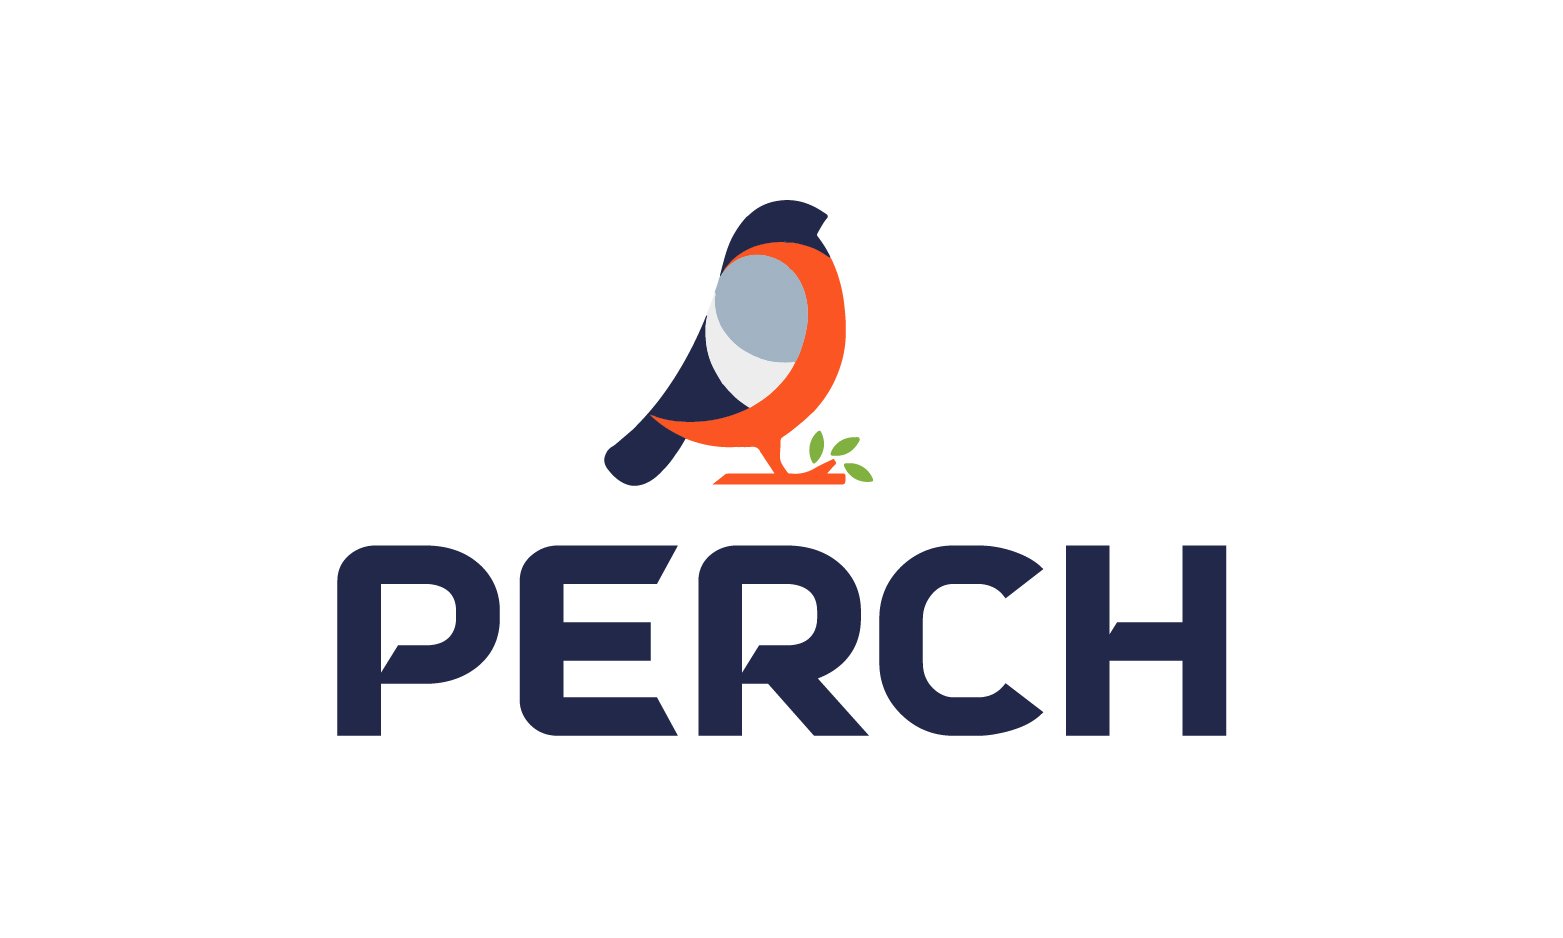 Perch.com - Creative brandable domain for sale